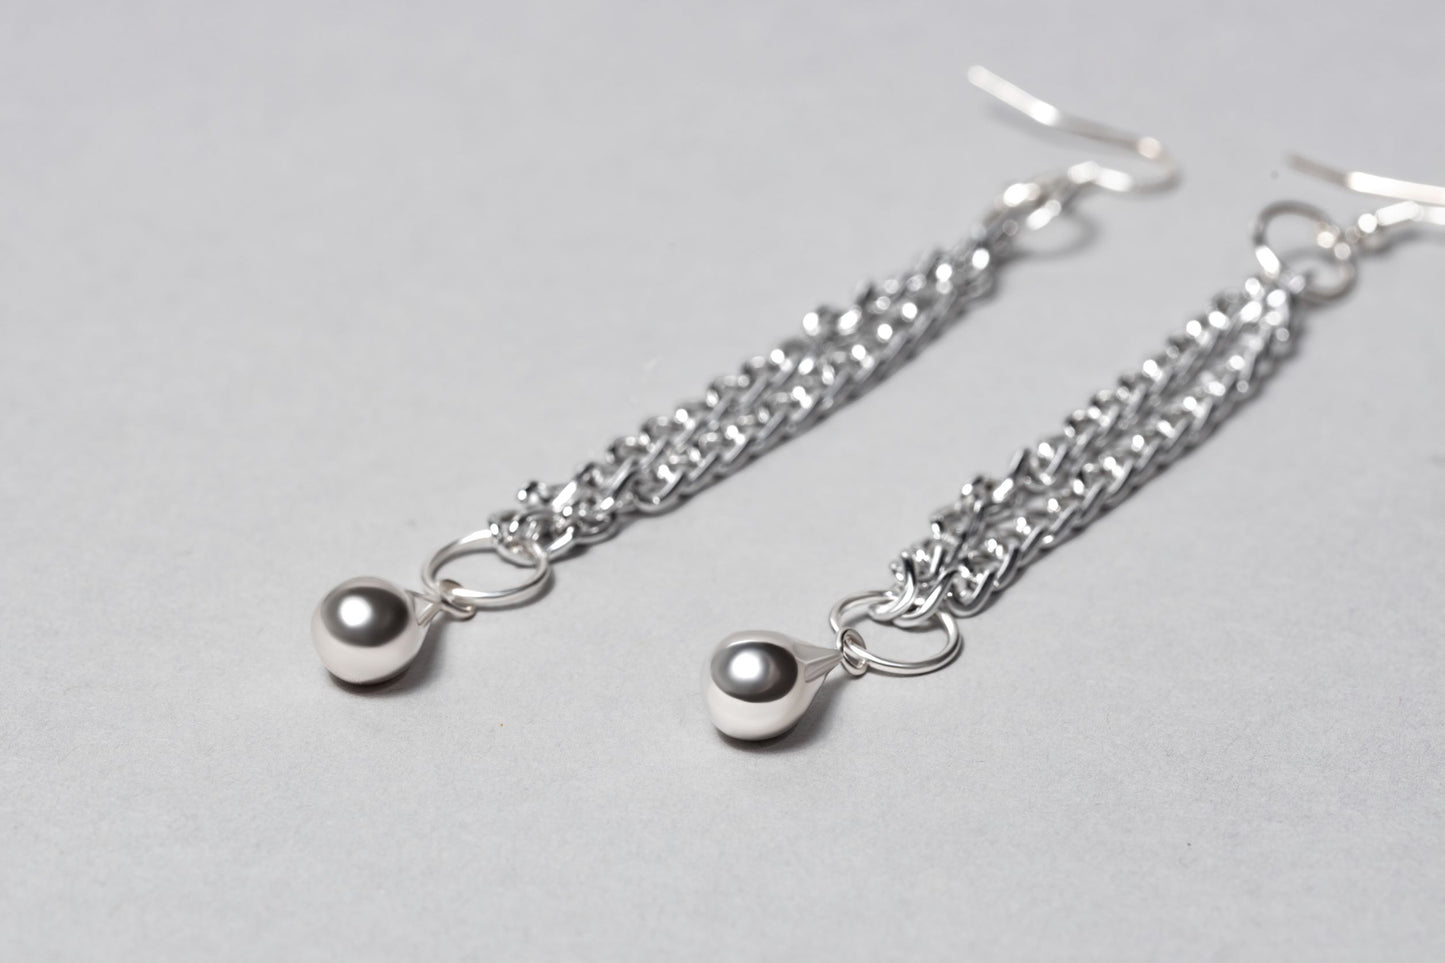 dhain Earrings for women, Chain Teardrop Earrings, handmade, close up silver earrings on chain photo